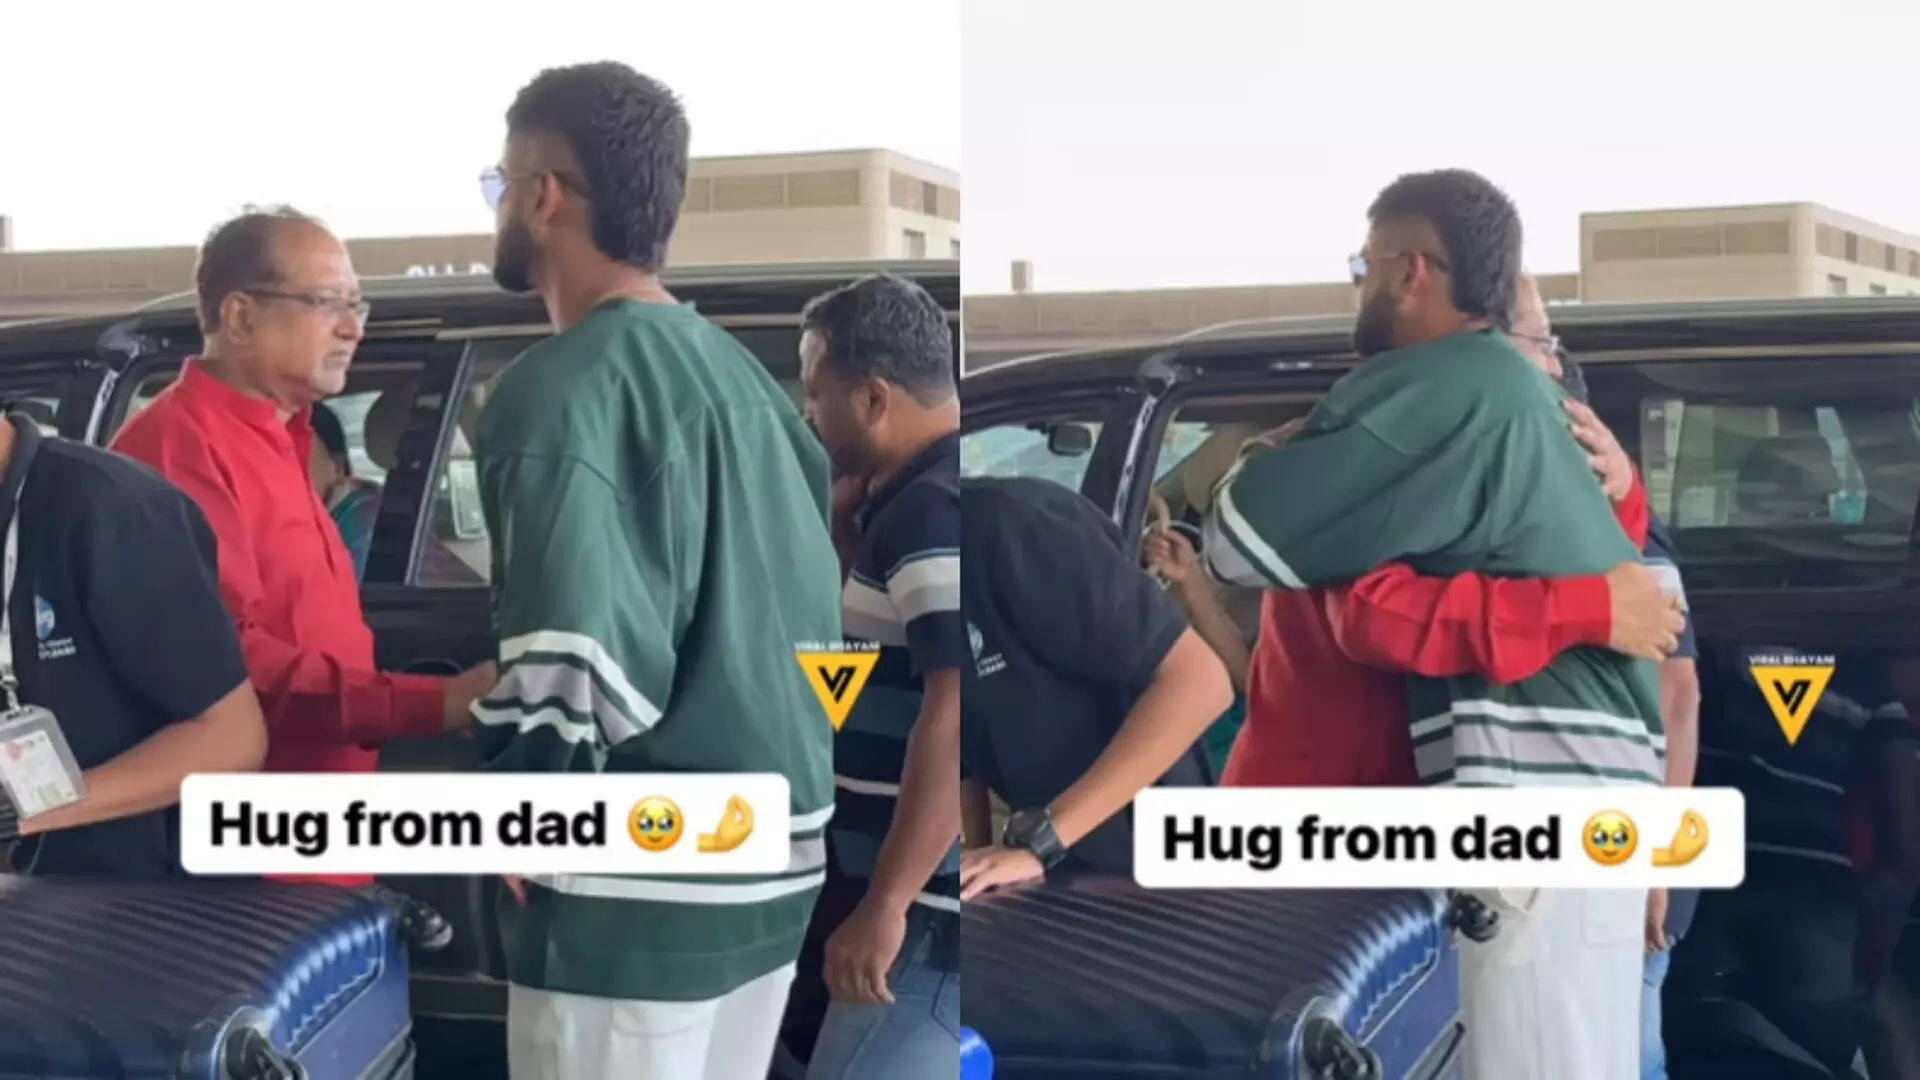 श्रेयस अय्यर ने हवाई अड्डे पर अपने पिता को लगाया गले